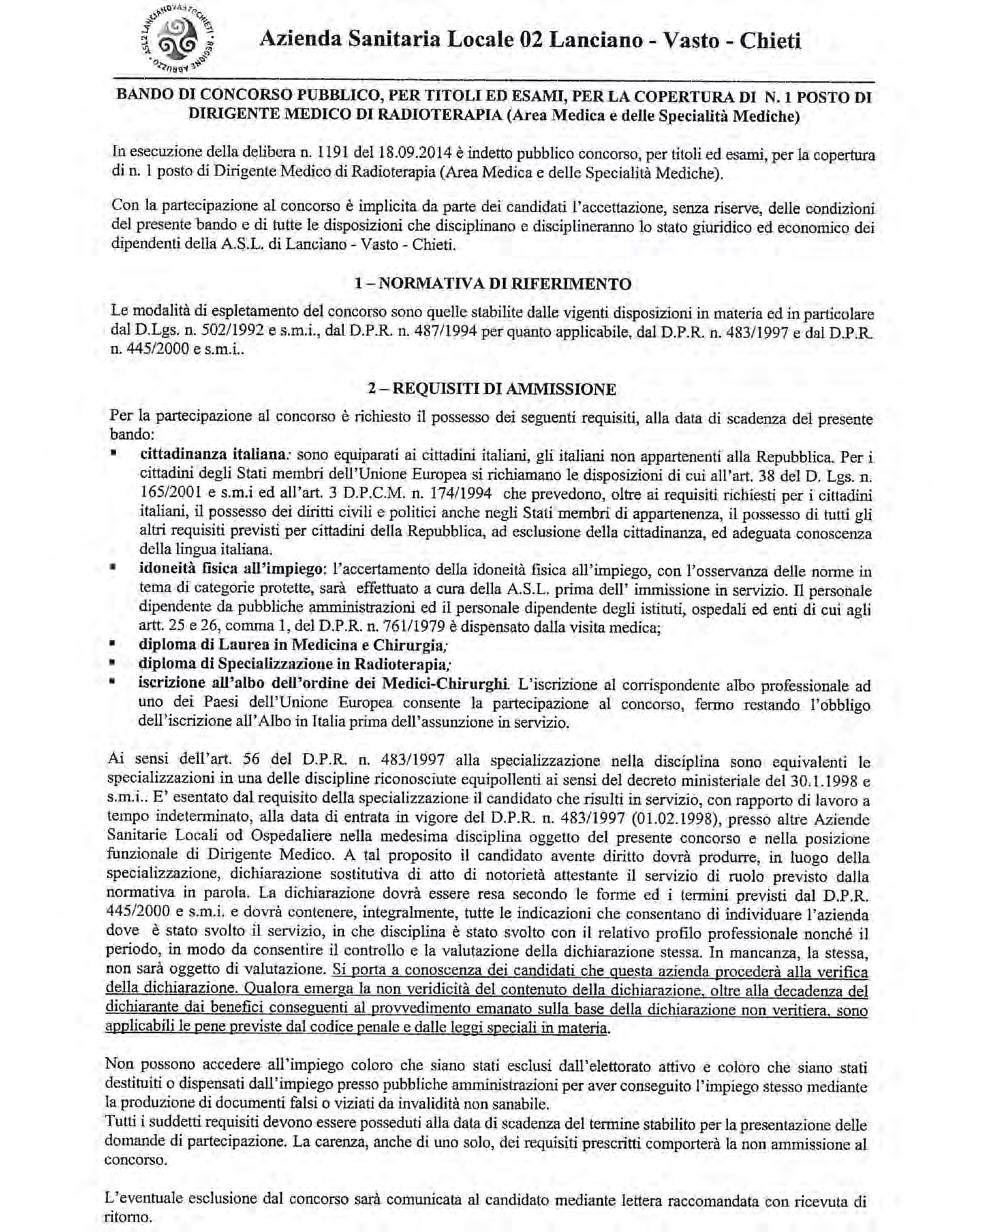 Anno XLIV - N. 130 Speciale (21.11.2014) Bollettino Ufficiale della Regione Abruzzo Pag.